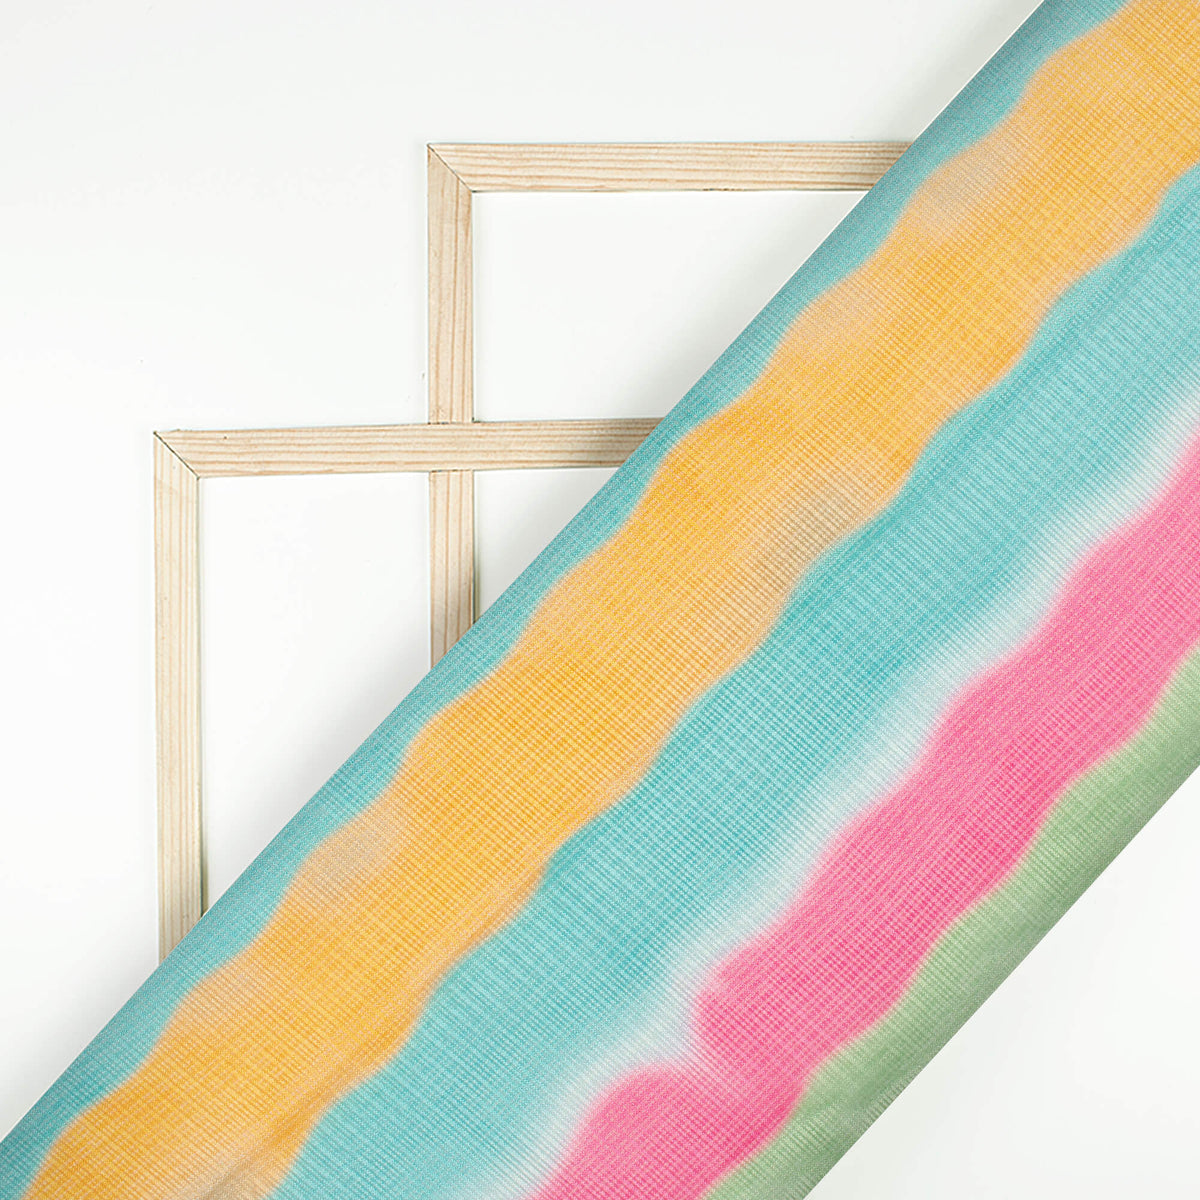 Smalt Blue And Tea Green Stripes Pattern Digital Print Kota Doria Fabric